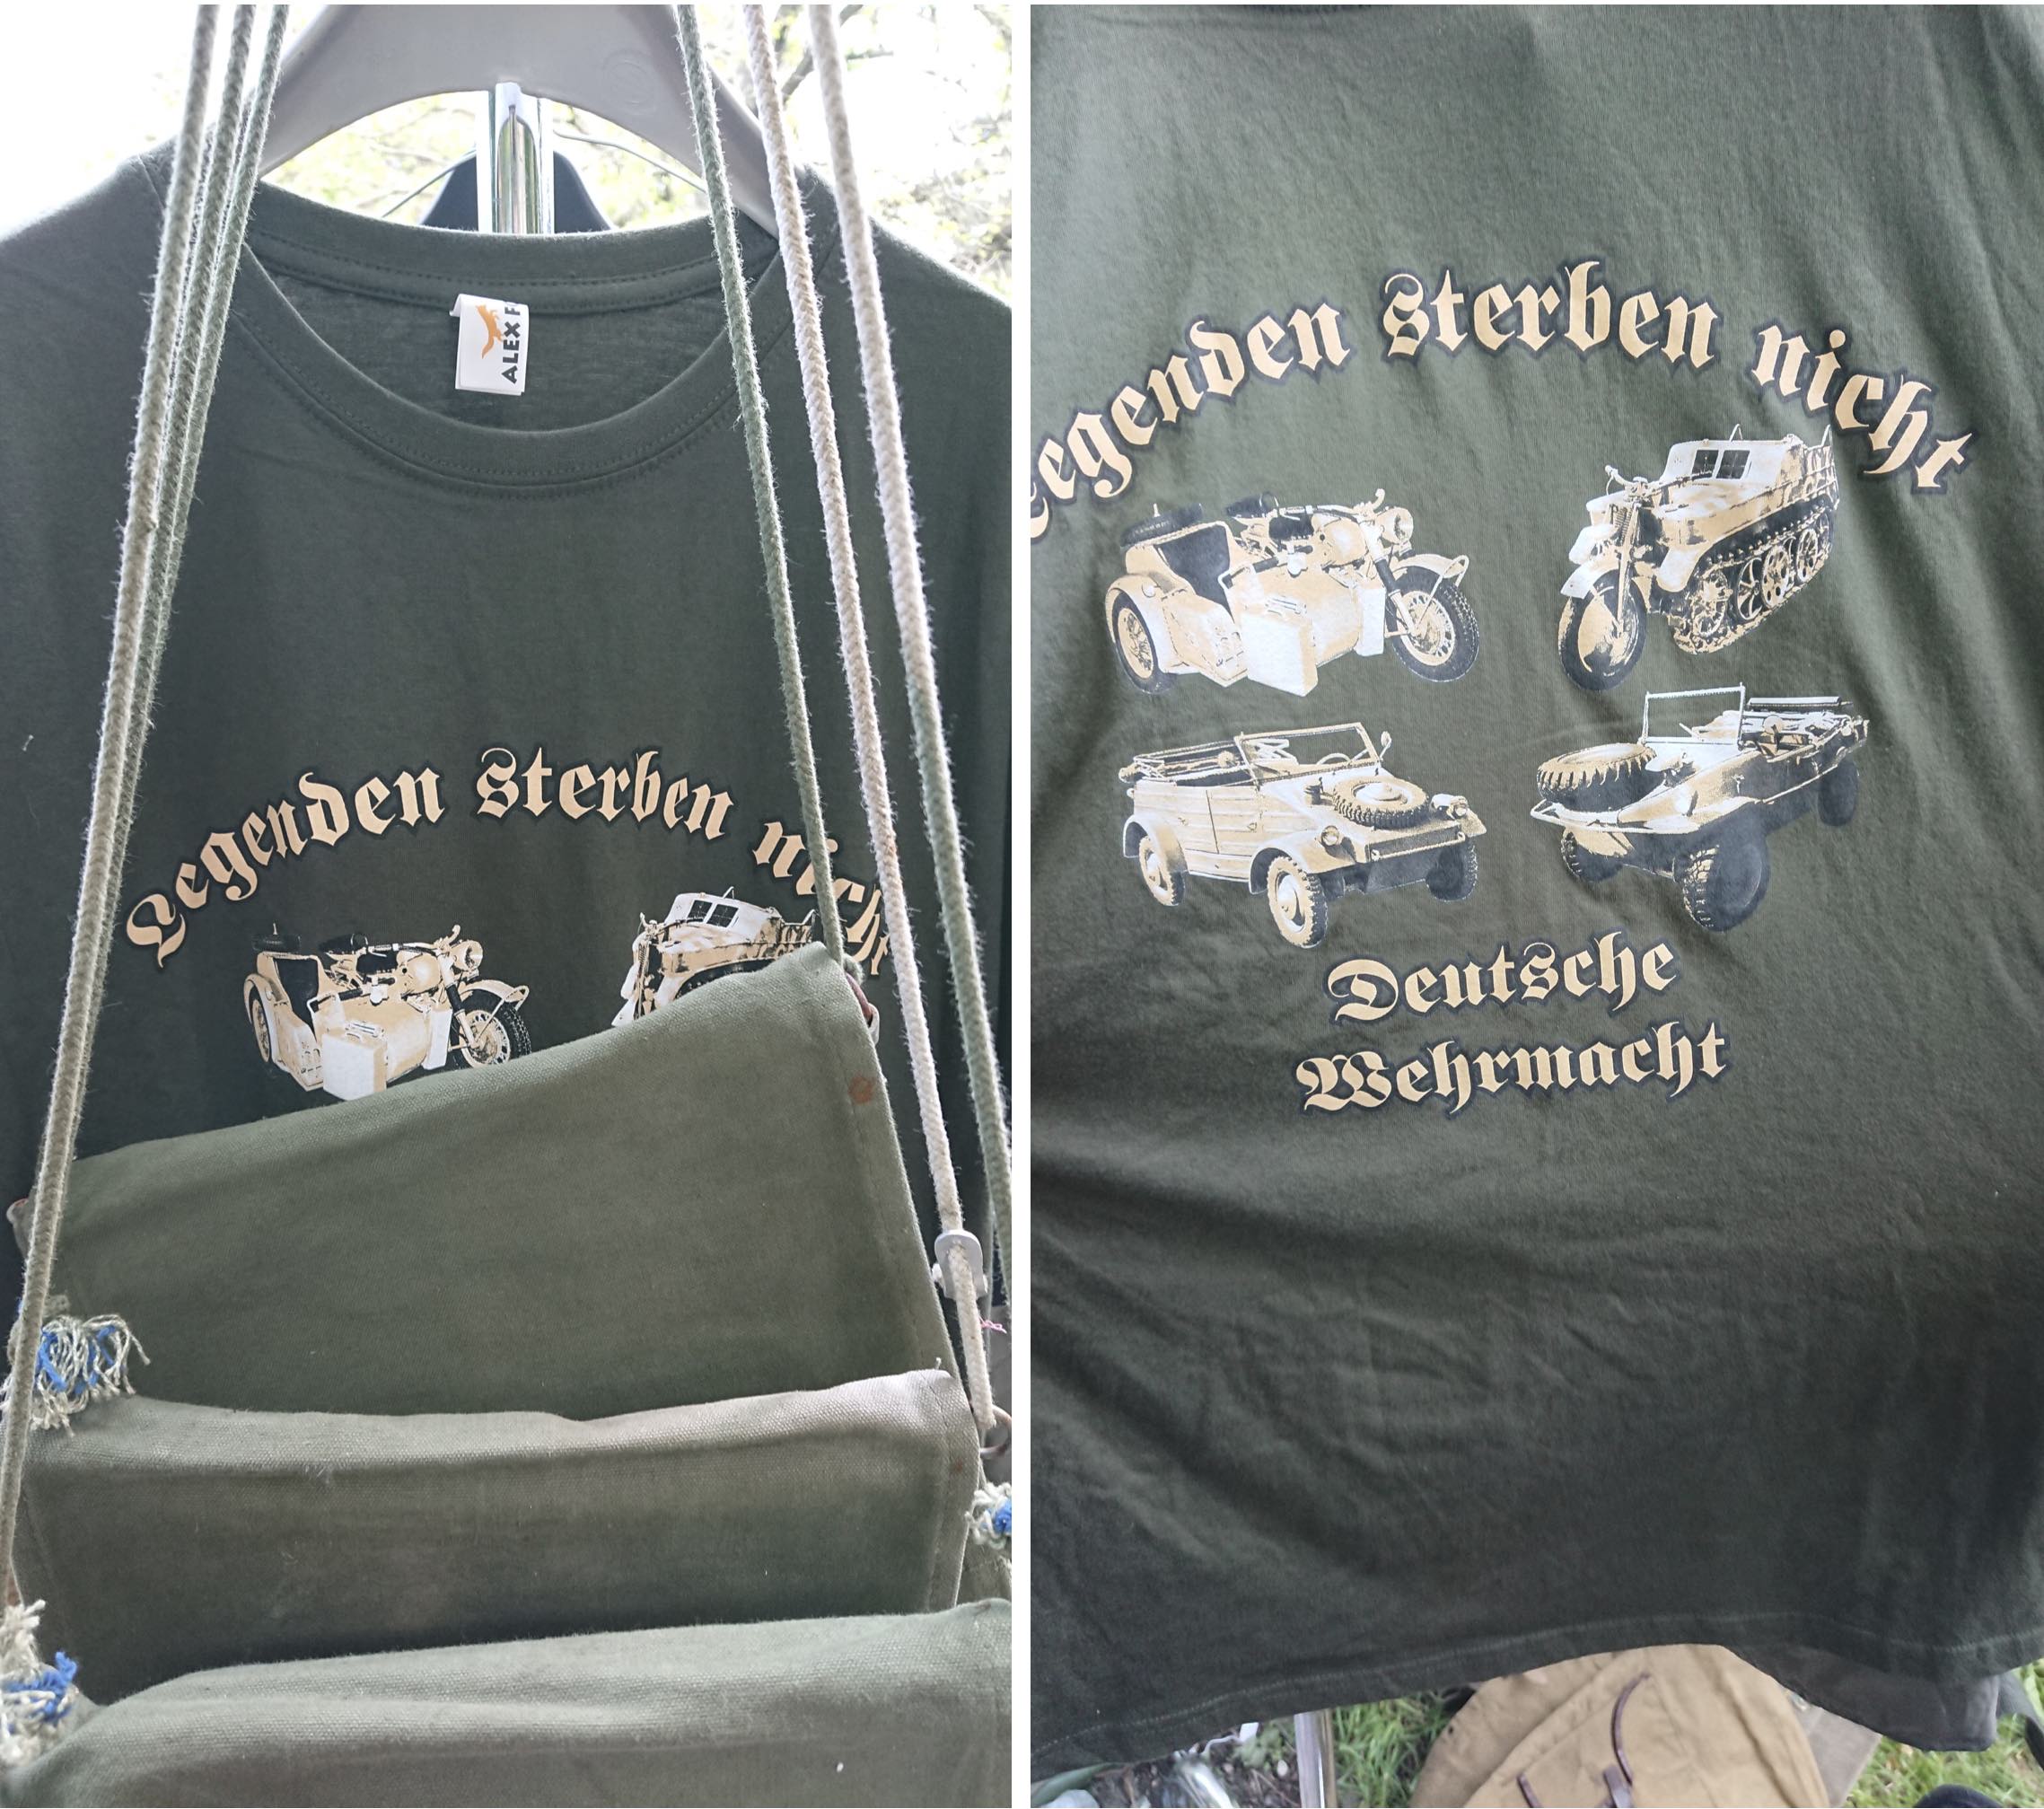 T-Shirt zum Verkauf: "Legenden sterben nicht – Deutsche Wehrmacht" (© SdR)